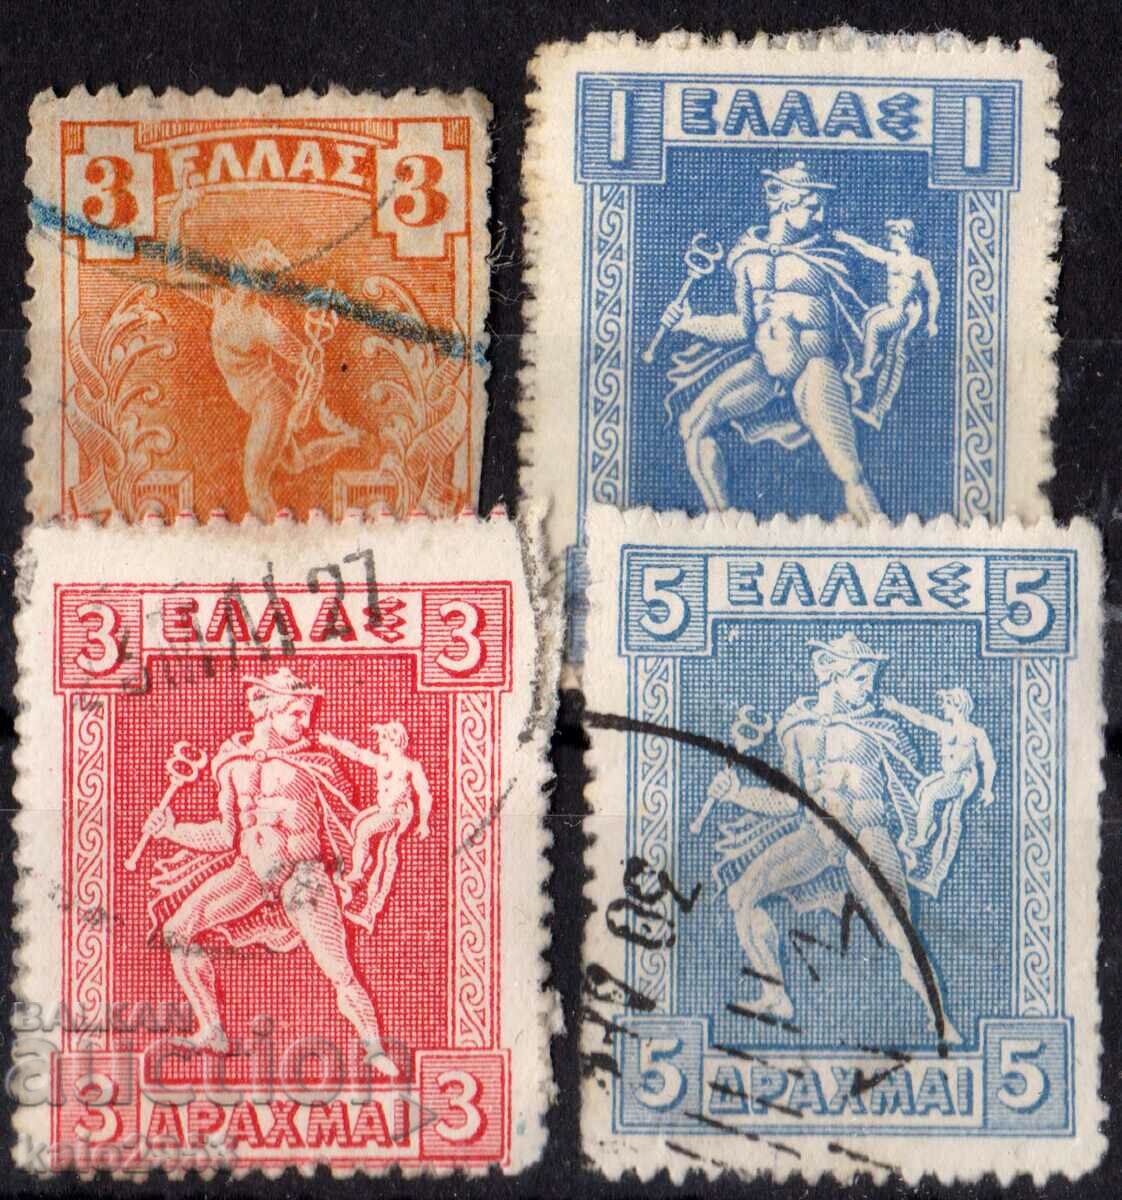 Greece-1911-Regular-Lot god Hermes, stamp